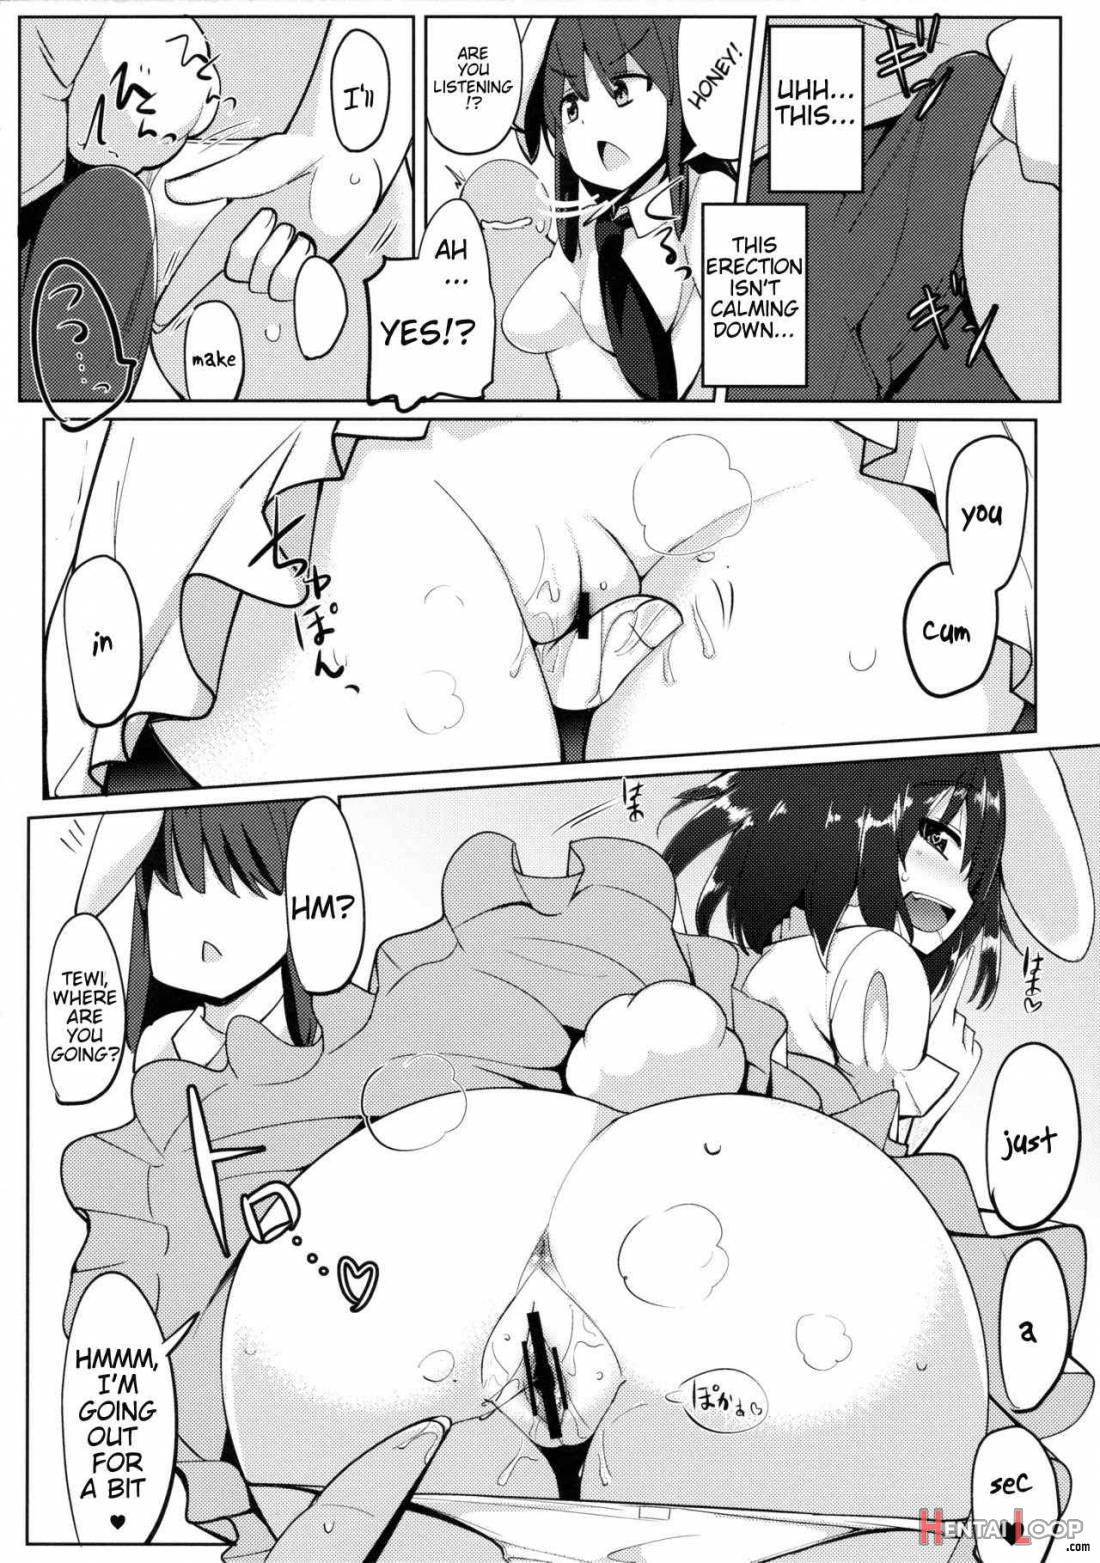 Uwaki Shite Tewi-chan to Sex Shita (3 Kai Me) page 10